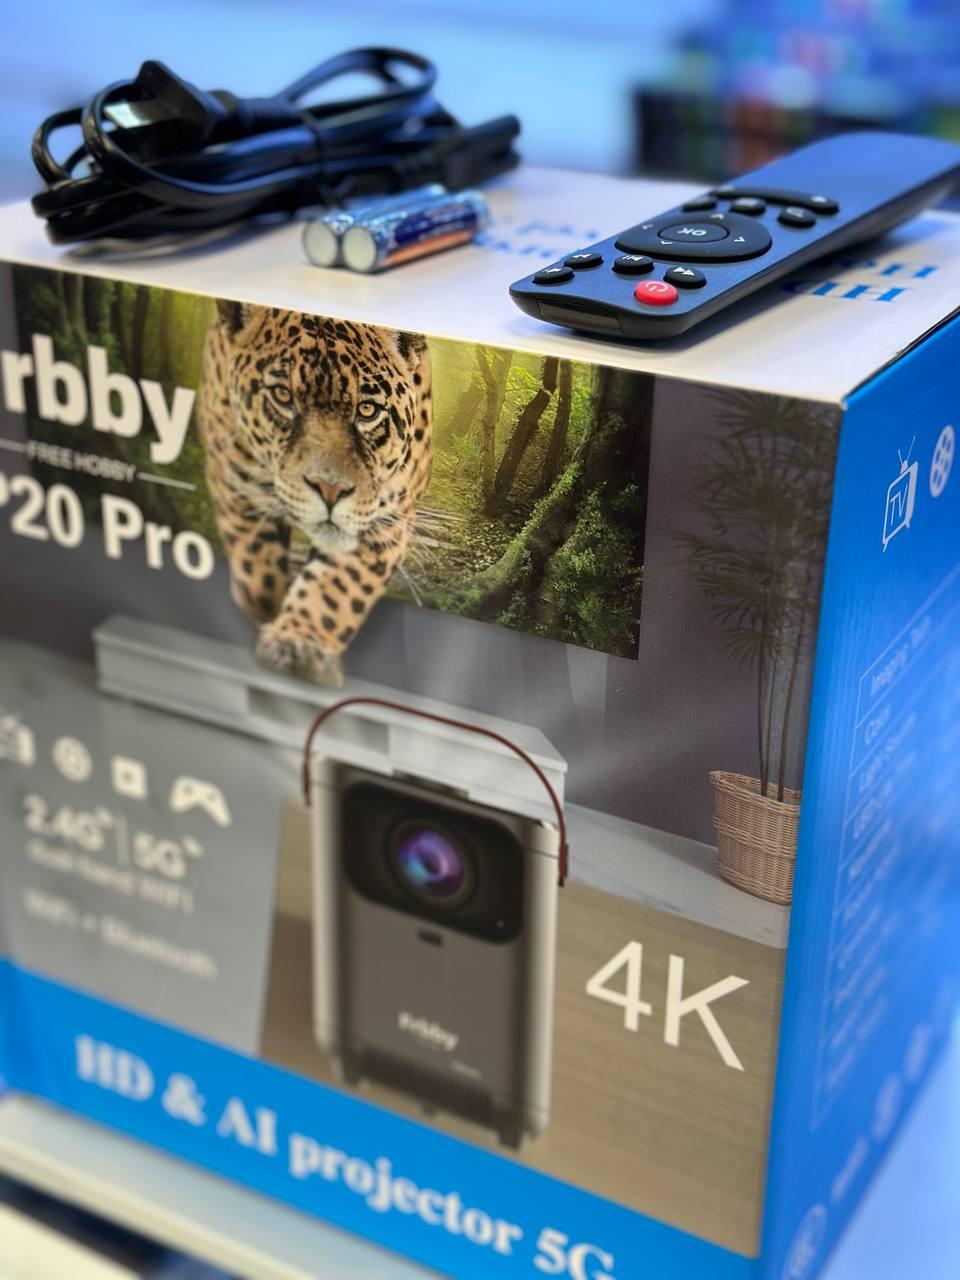 Умный лазерный проектор Frbby P20 Pro (4К,HD,2.4G/5G,Wifi+ Bluetooth), фото 5